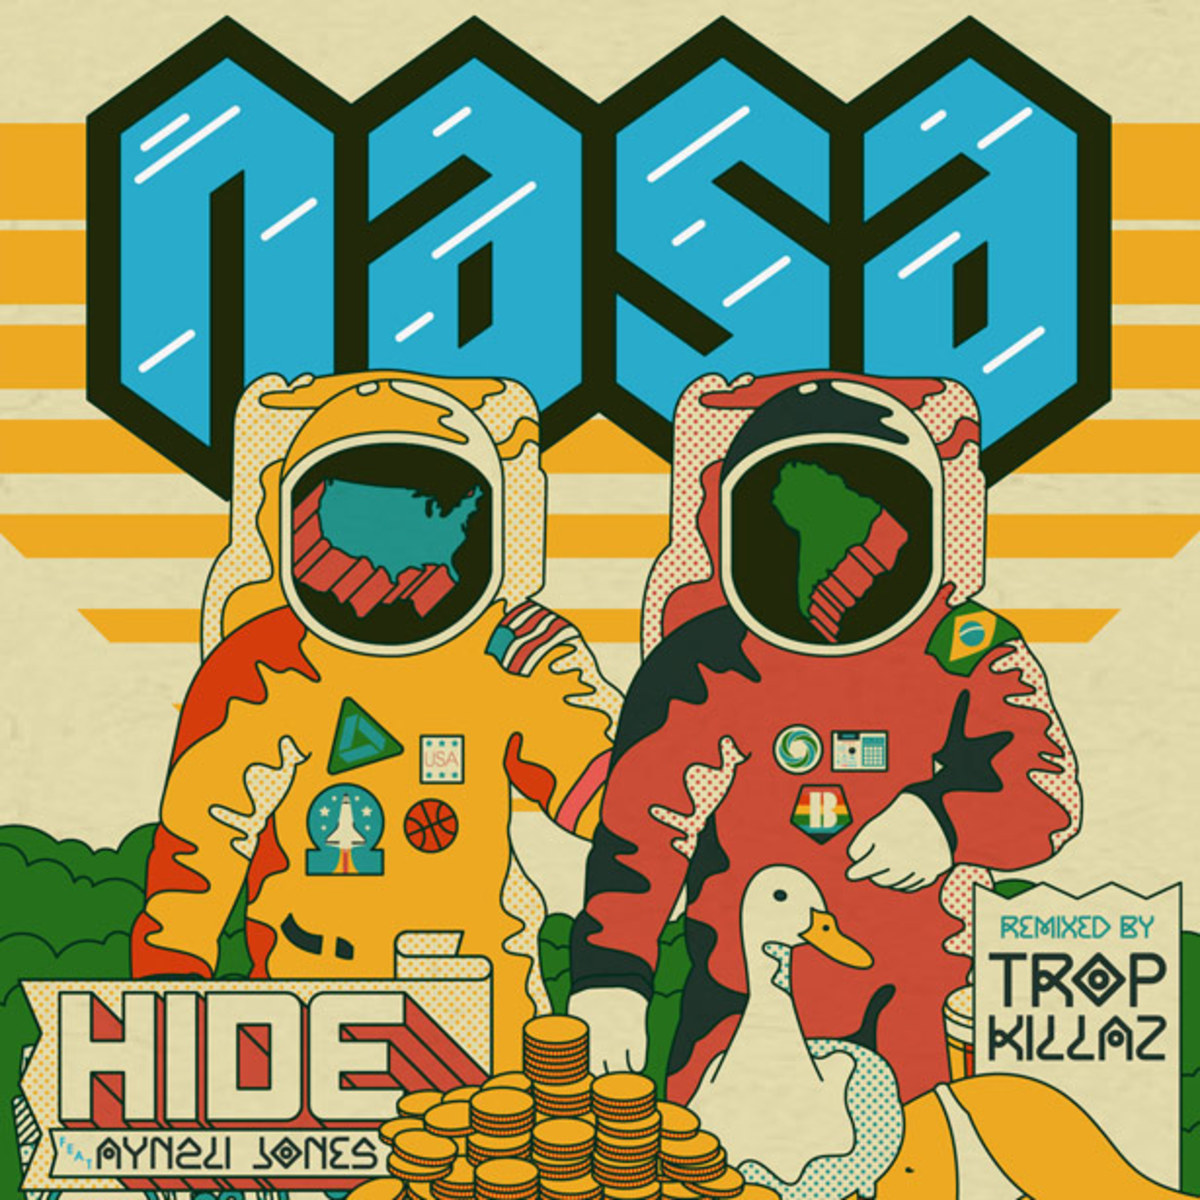 Exclusive Premier: N.A.S.A.'s "Hide" (Tropkillaz Remix) - New Electronic Music - EDM News